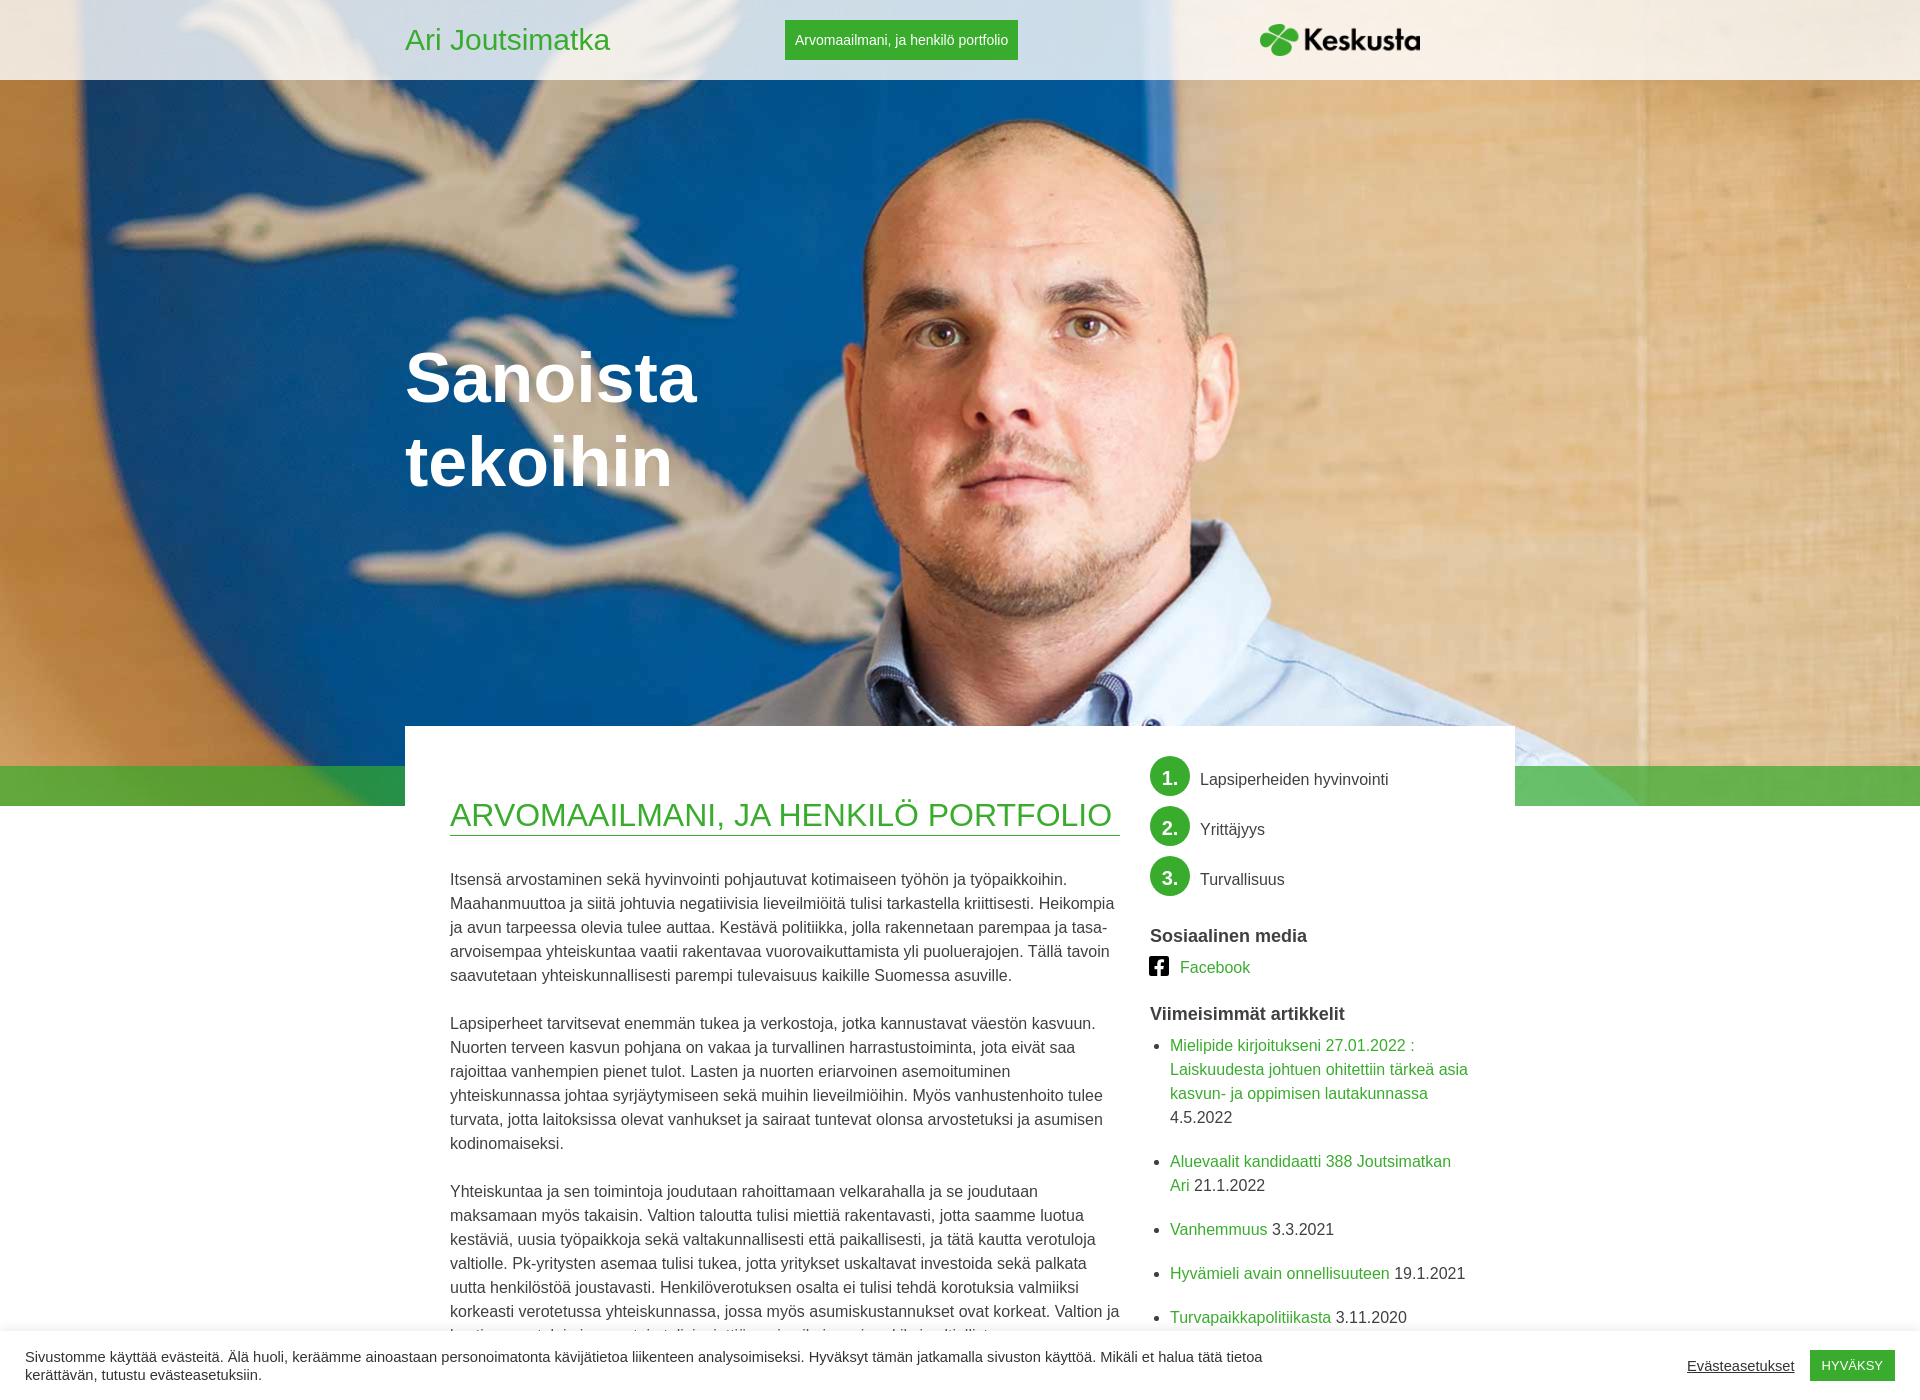 Skärmdump för arijoutsimatka.fi